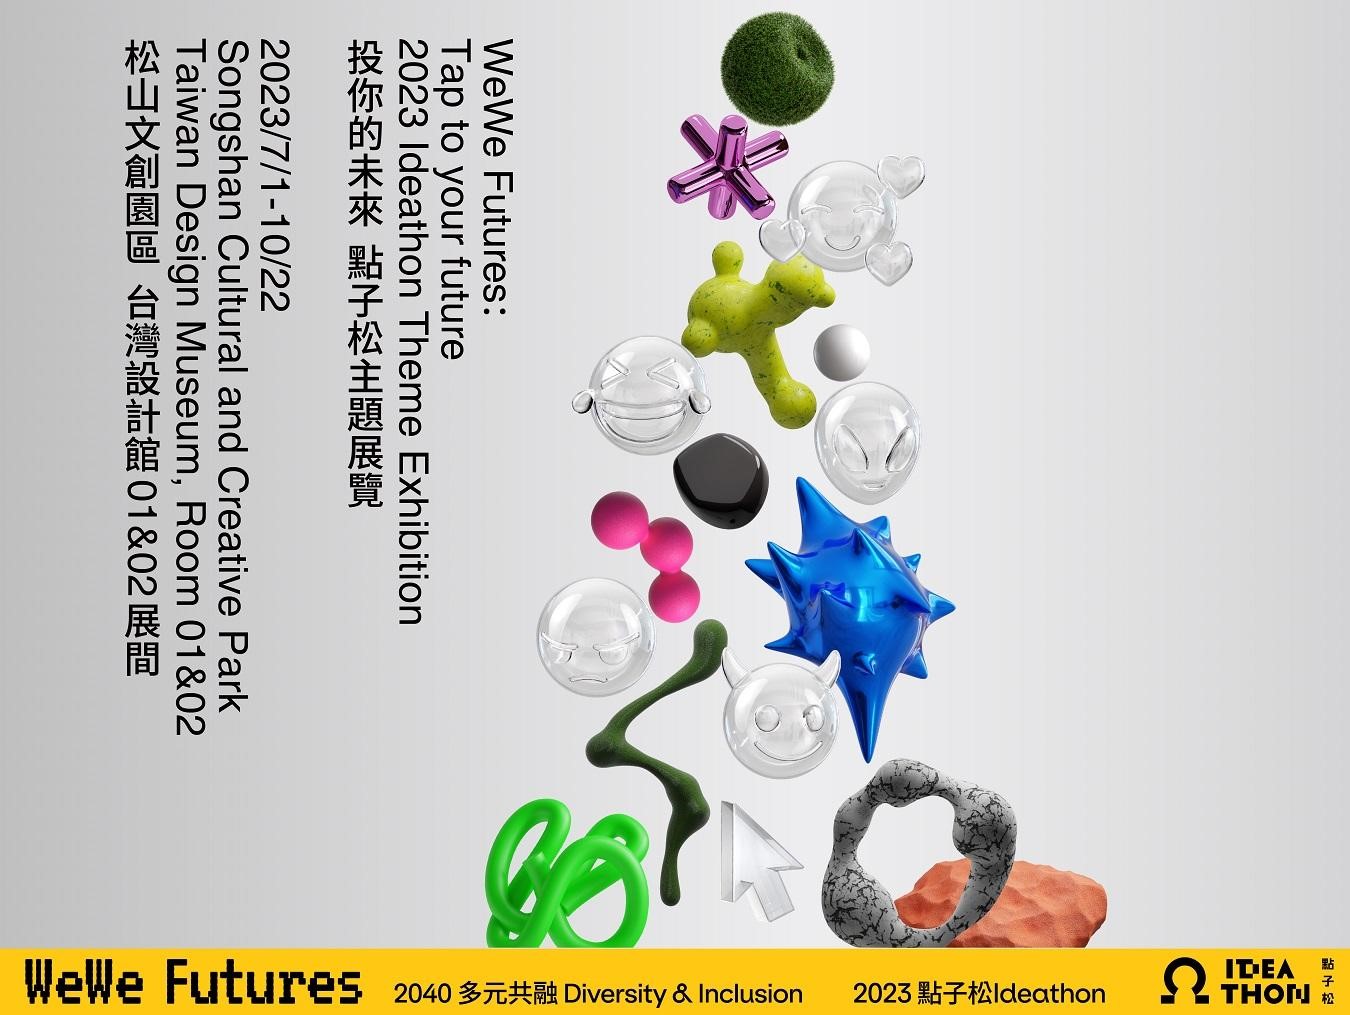 點子松主題展覽「WeWe Futures：投你的未來」宣傳海報